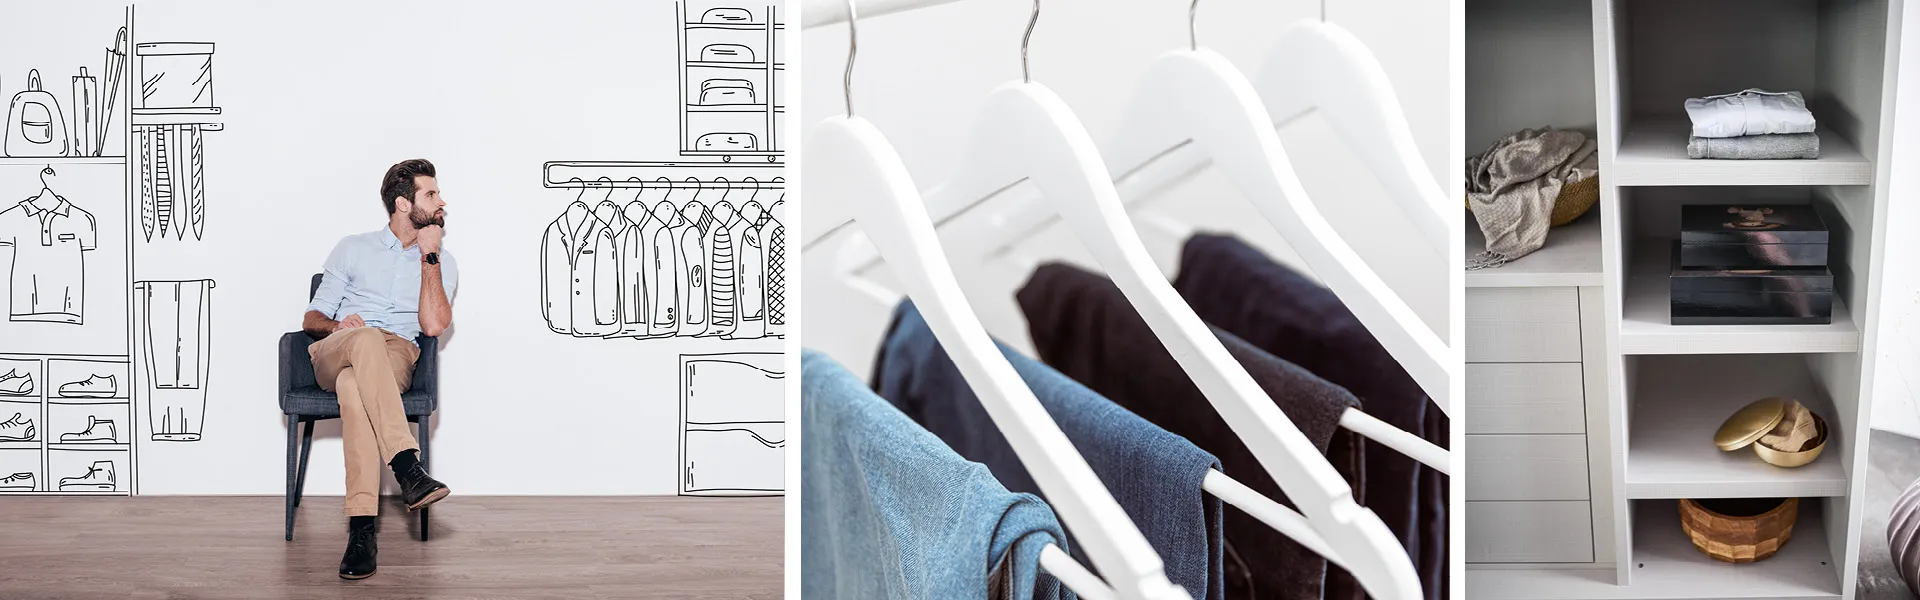 Planen Sie Ihren Kleiderschrank Ihren Bedürfnissen entsprechend: Design, Größe, Funktionen und Farben müssen passen.